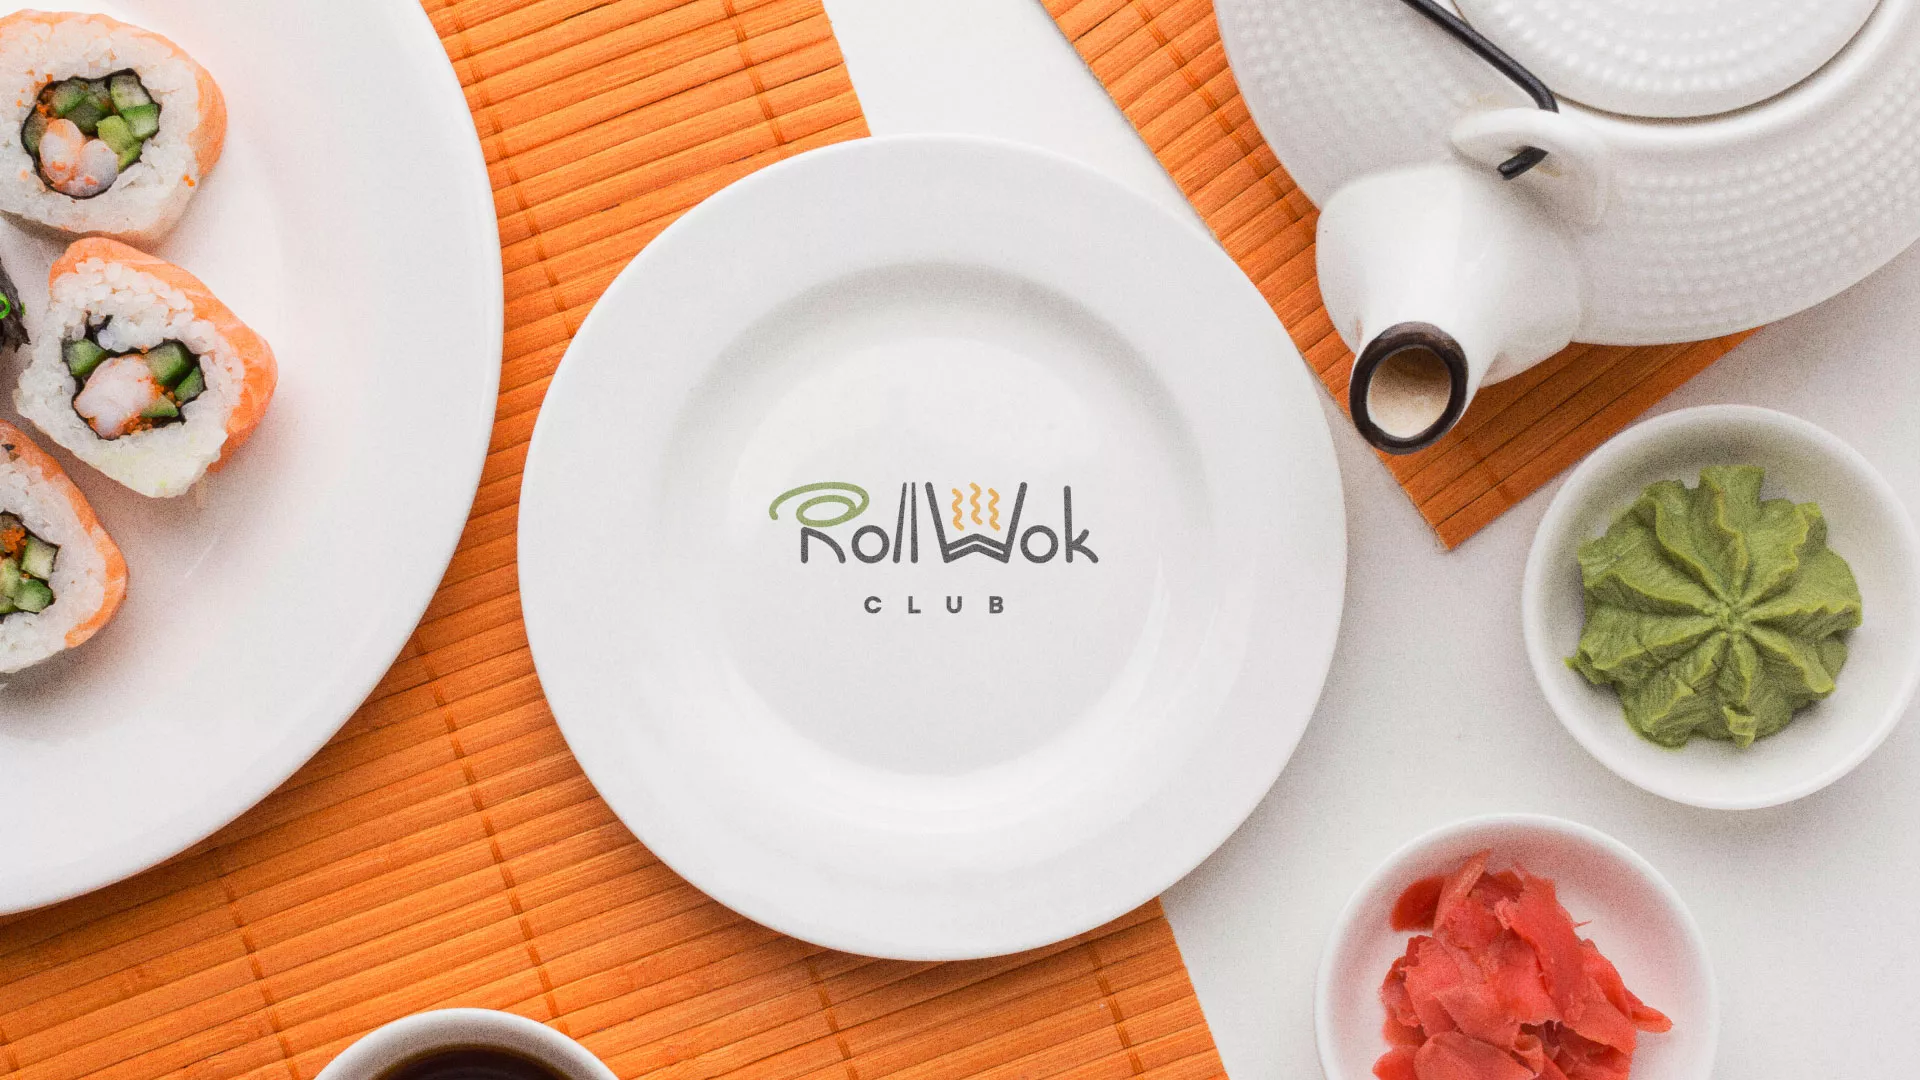 Разработка логотипа и фирменного стиля суши-бара «Roll Wok Club» в Оленегорске